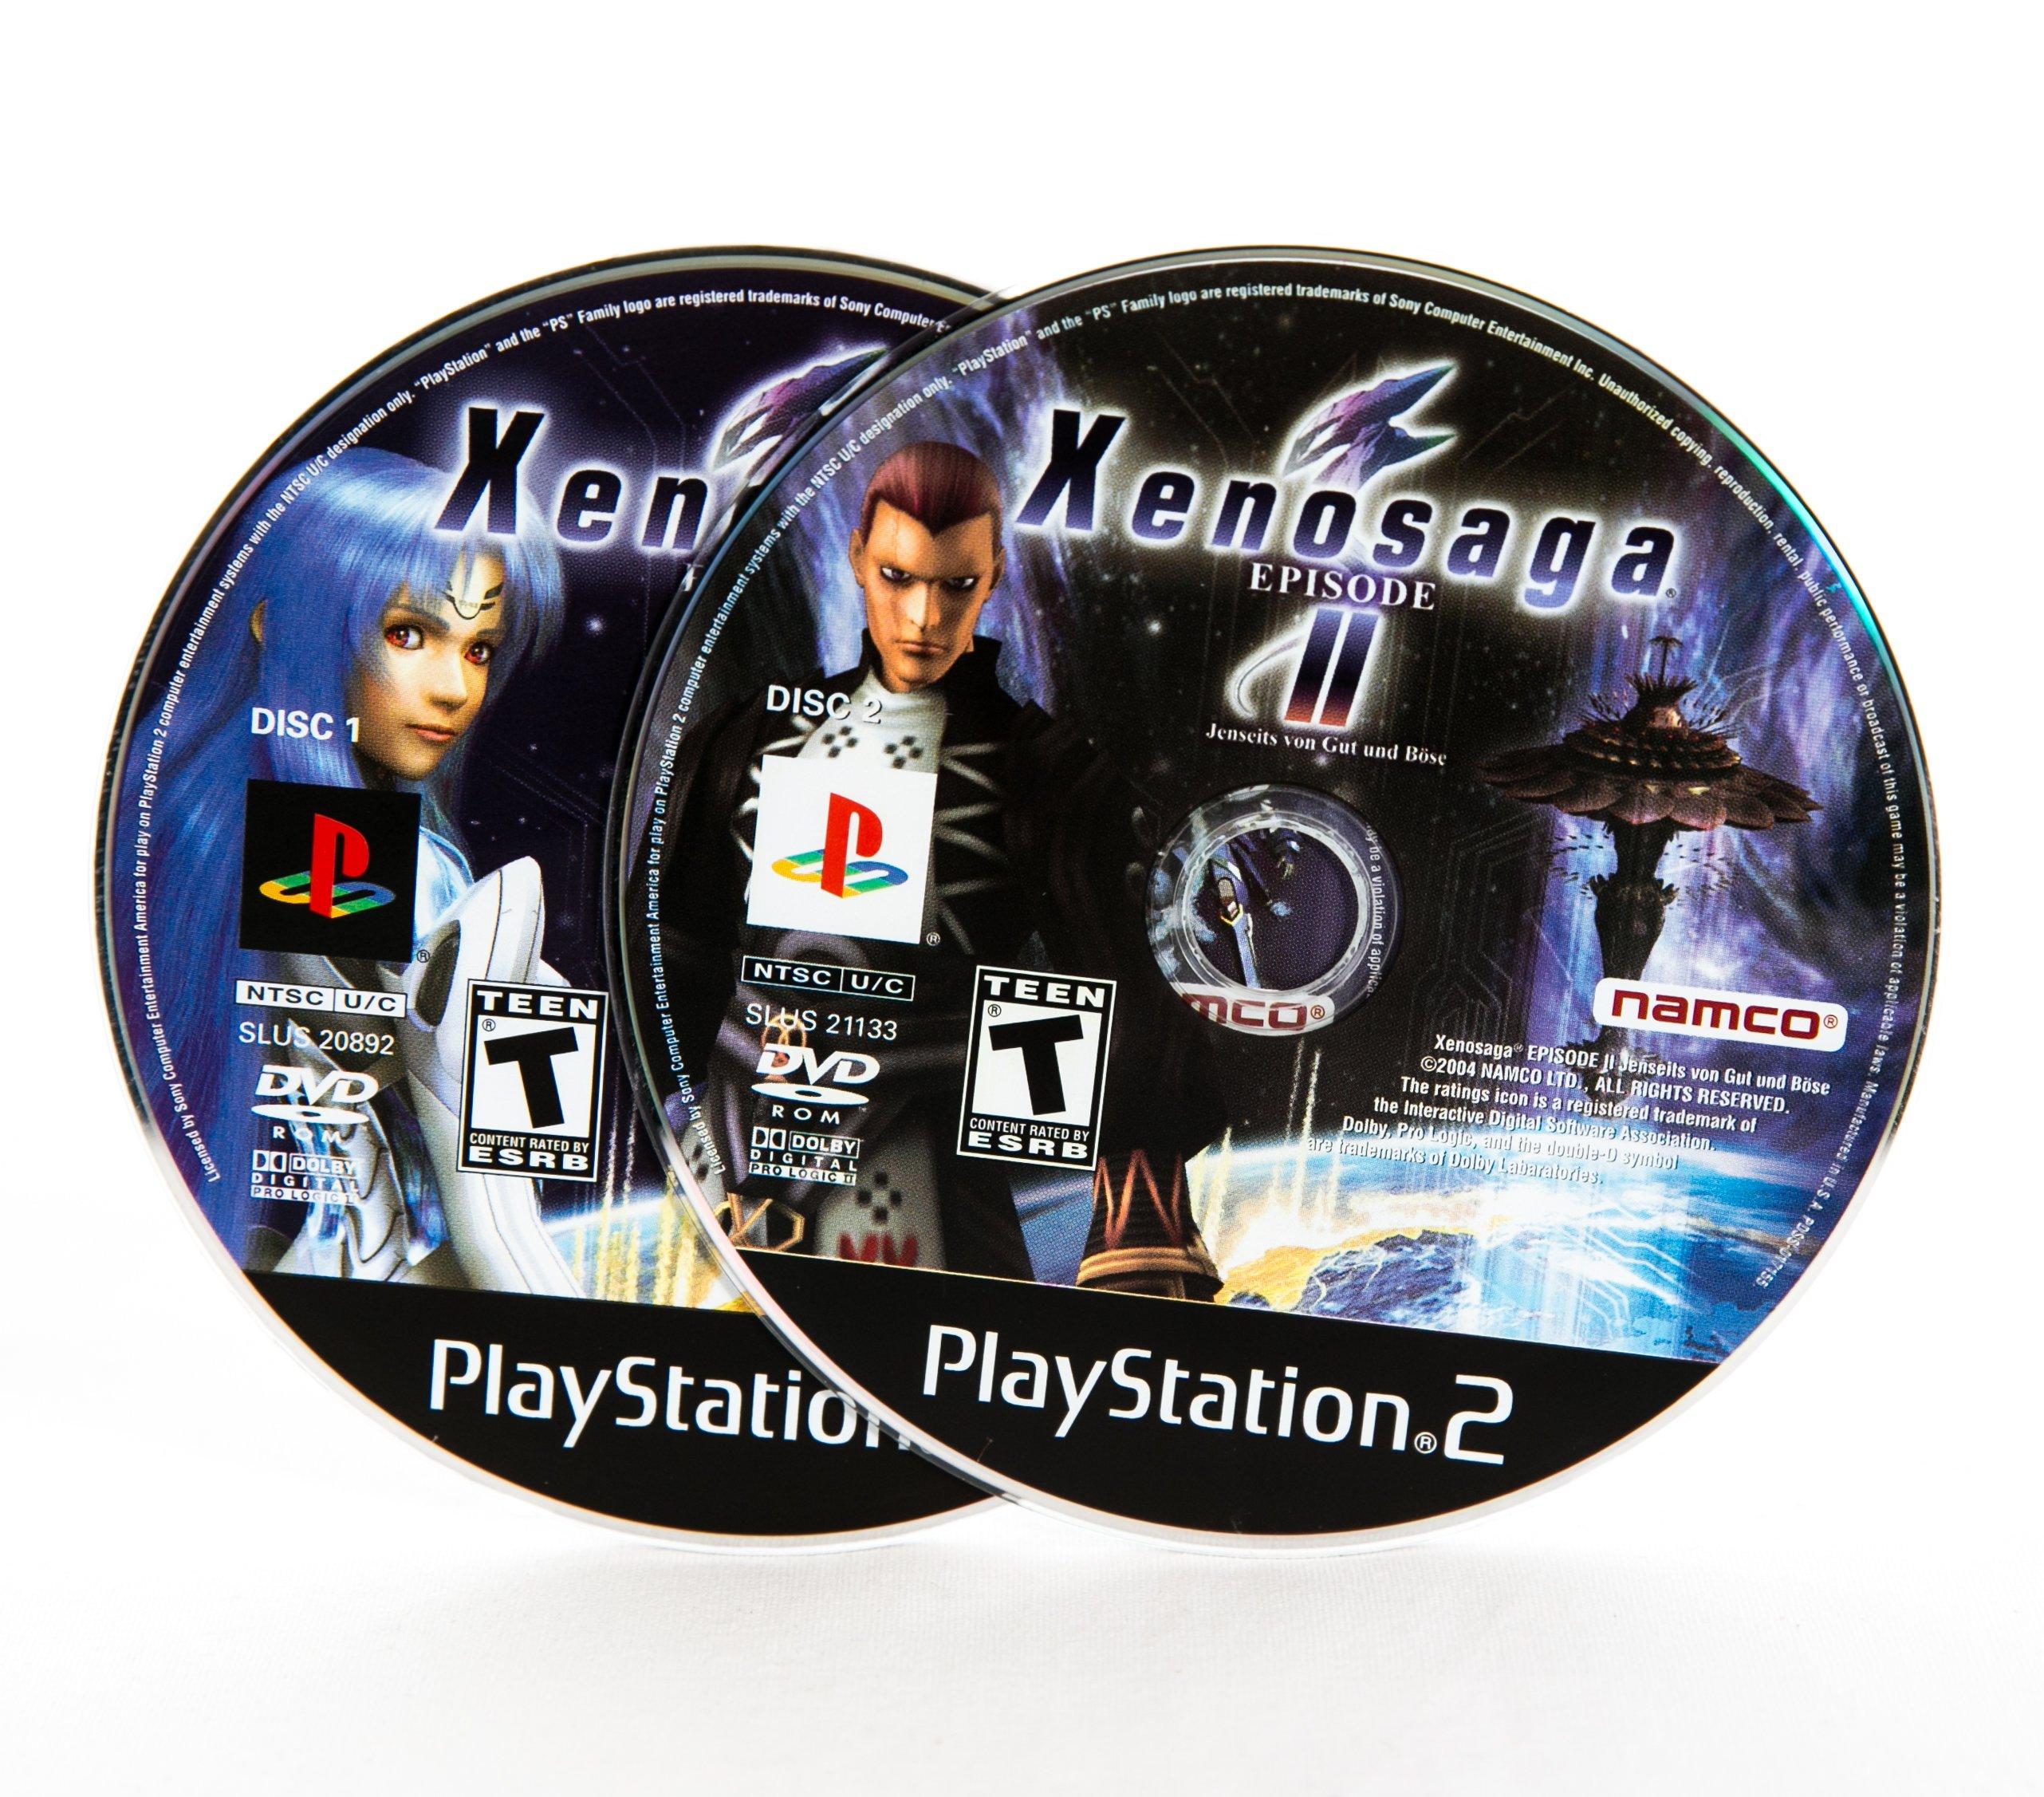 Xenosaga Episode II: Jenseits von Gut und Bose - PlayStation 2